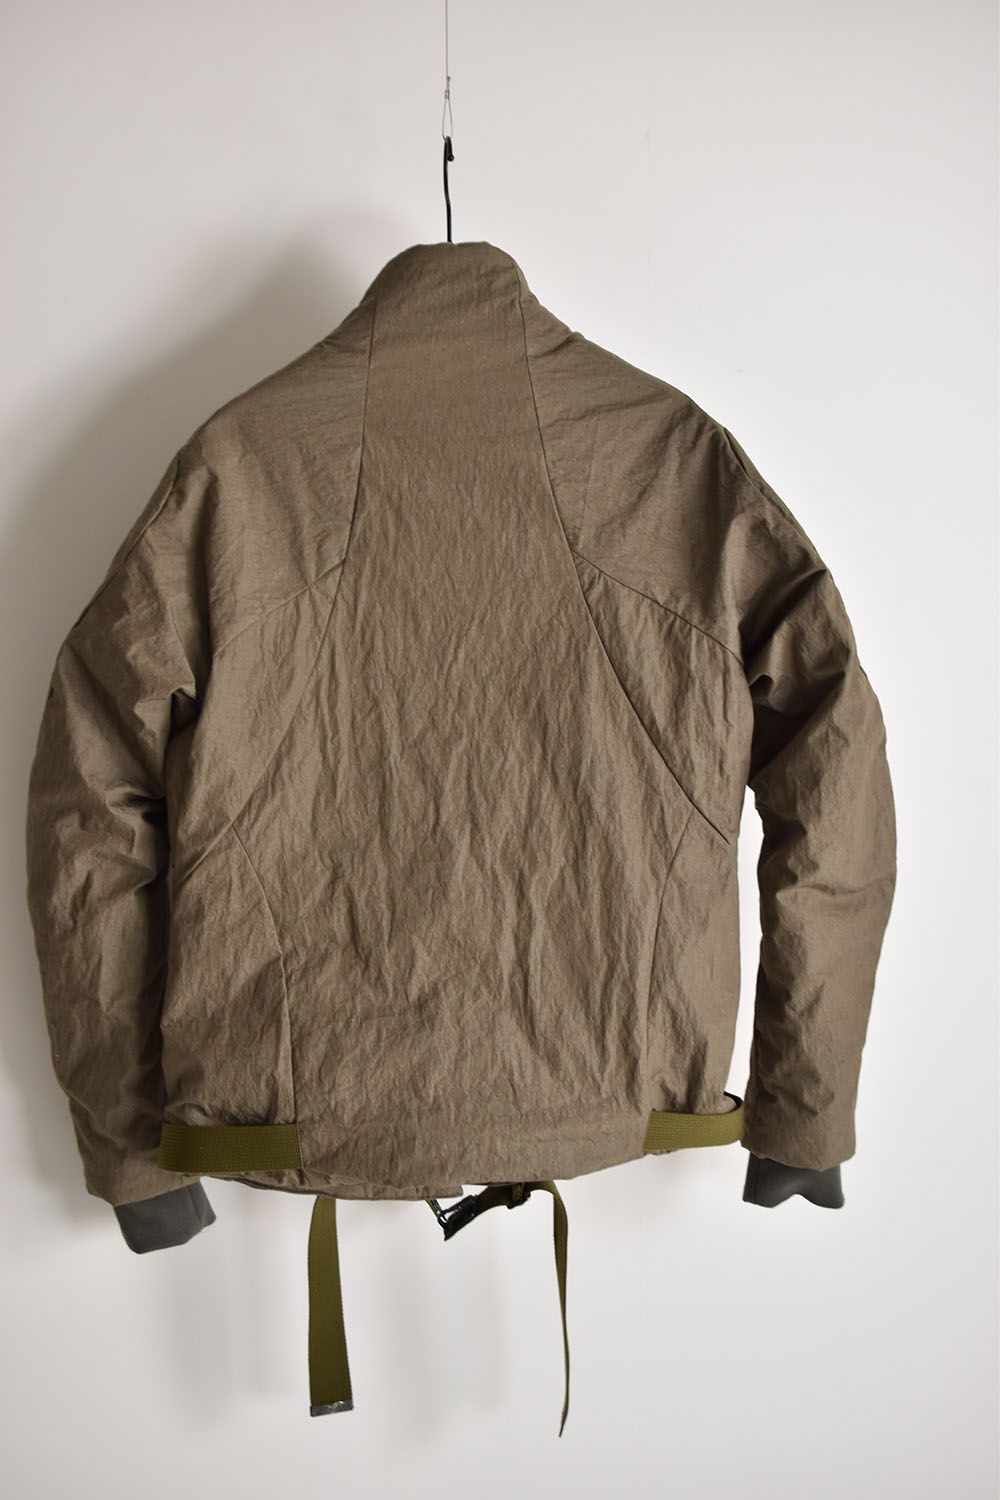 N/C Damp down Bomber jacket"Khaki" / ダンプダウンボンバージャケット"カーキ"